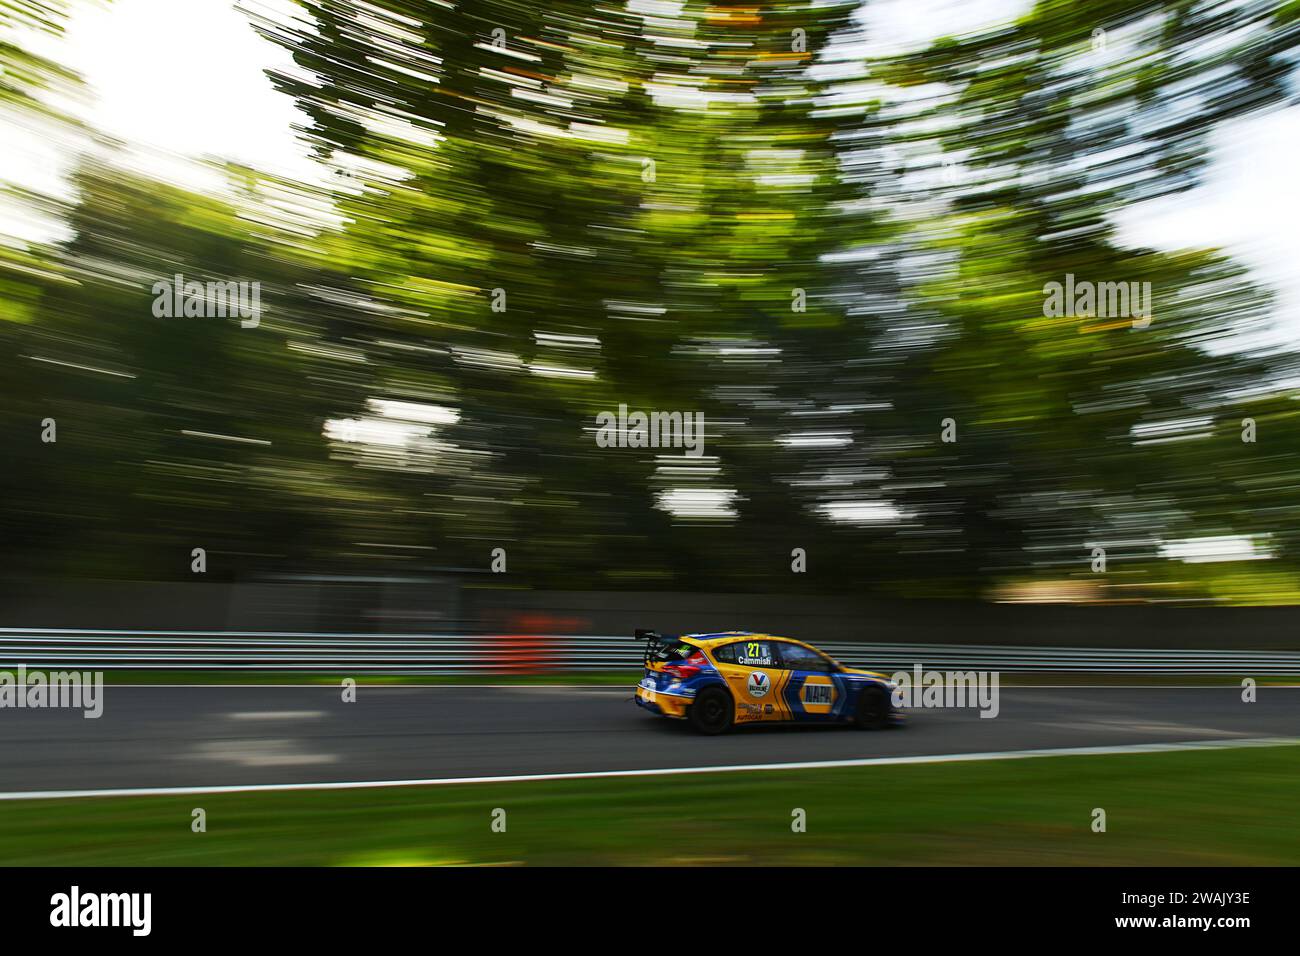 Dan Cammish Racing al Brands Hatch di NAPA Ford Focus RS Foto Stock